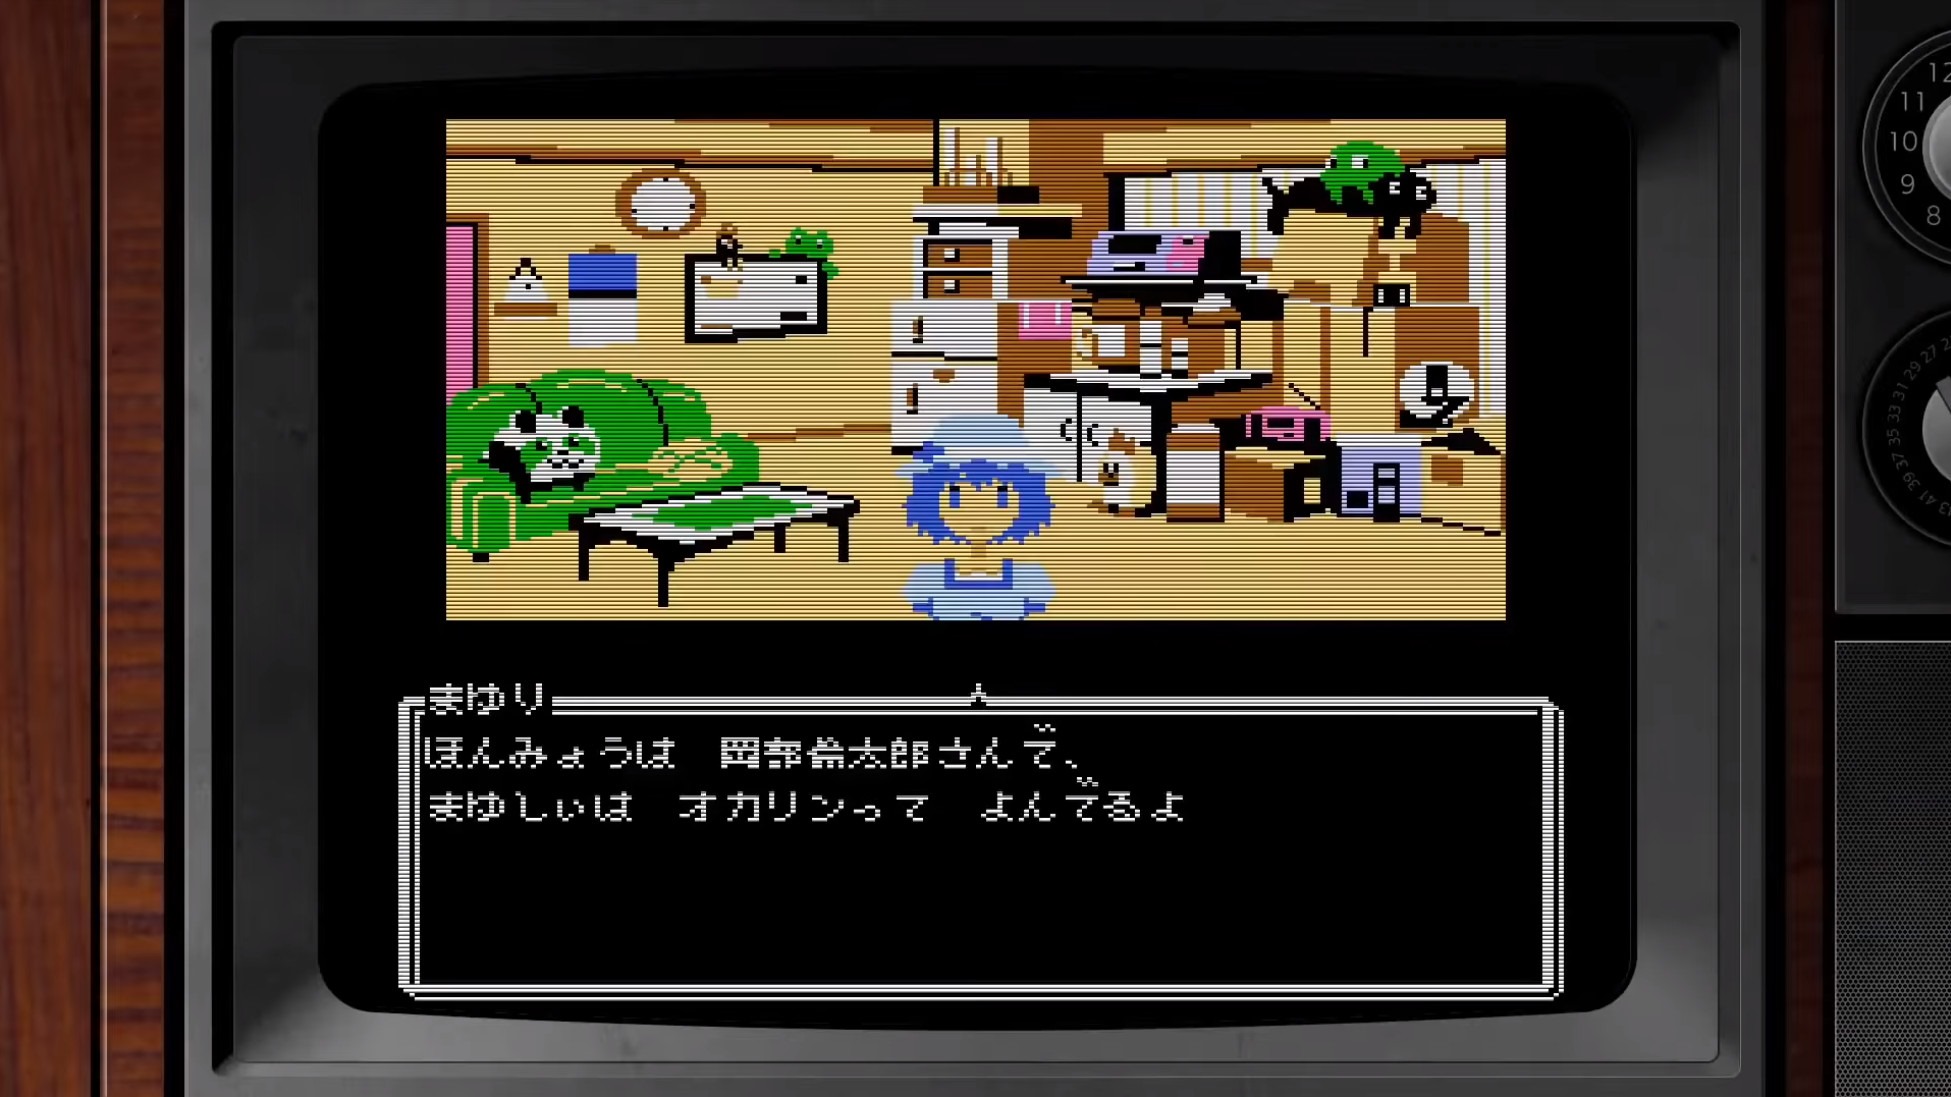 Nintendo elite. Steins Gate 8 bit. Steins Gate Nintendo Switch. 8-Bit ADV Steins;Gate. Steins Gate NES.